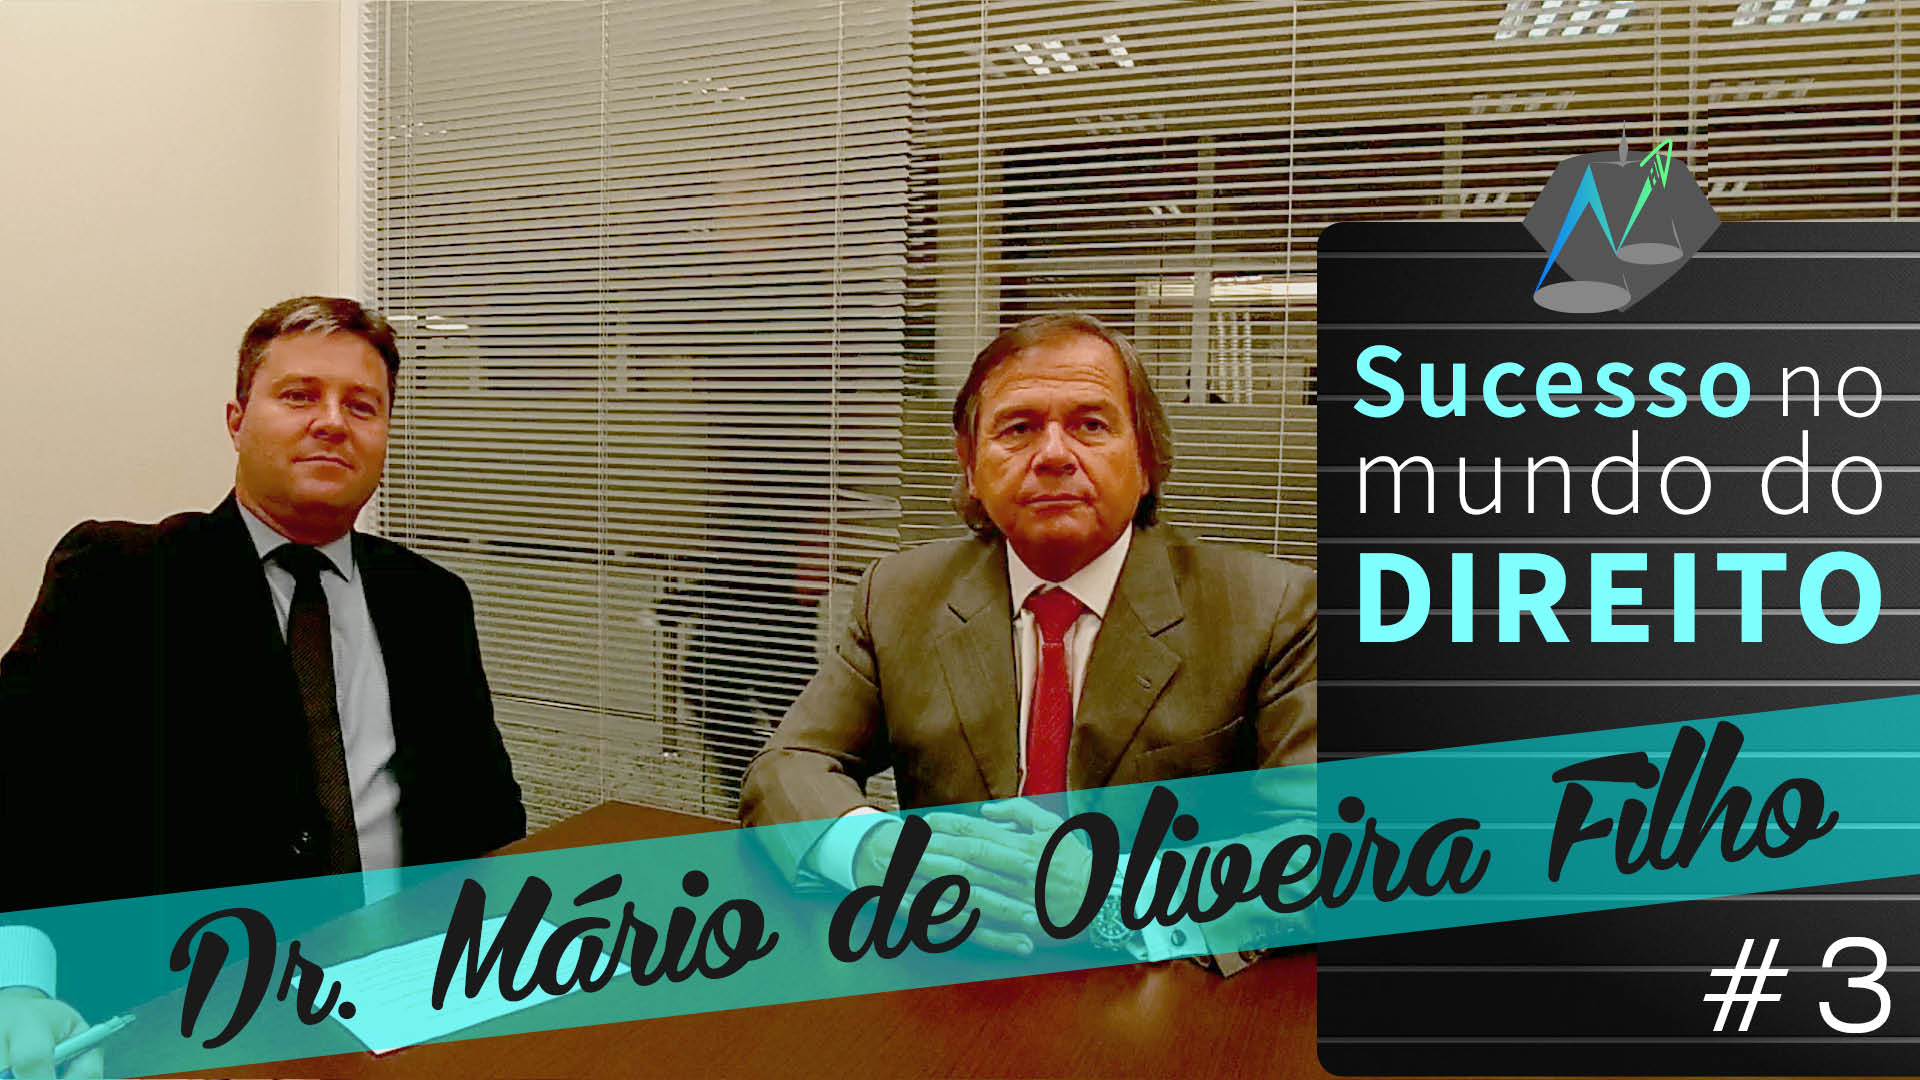 Entrevista com Mario de Oliveira Filho sobre sucesso no Direito